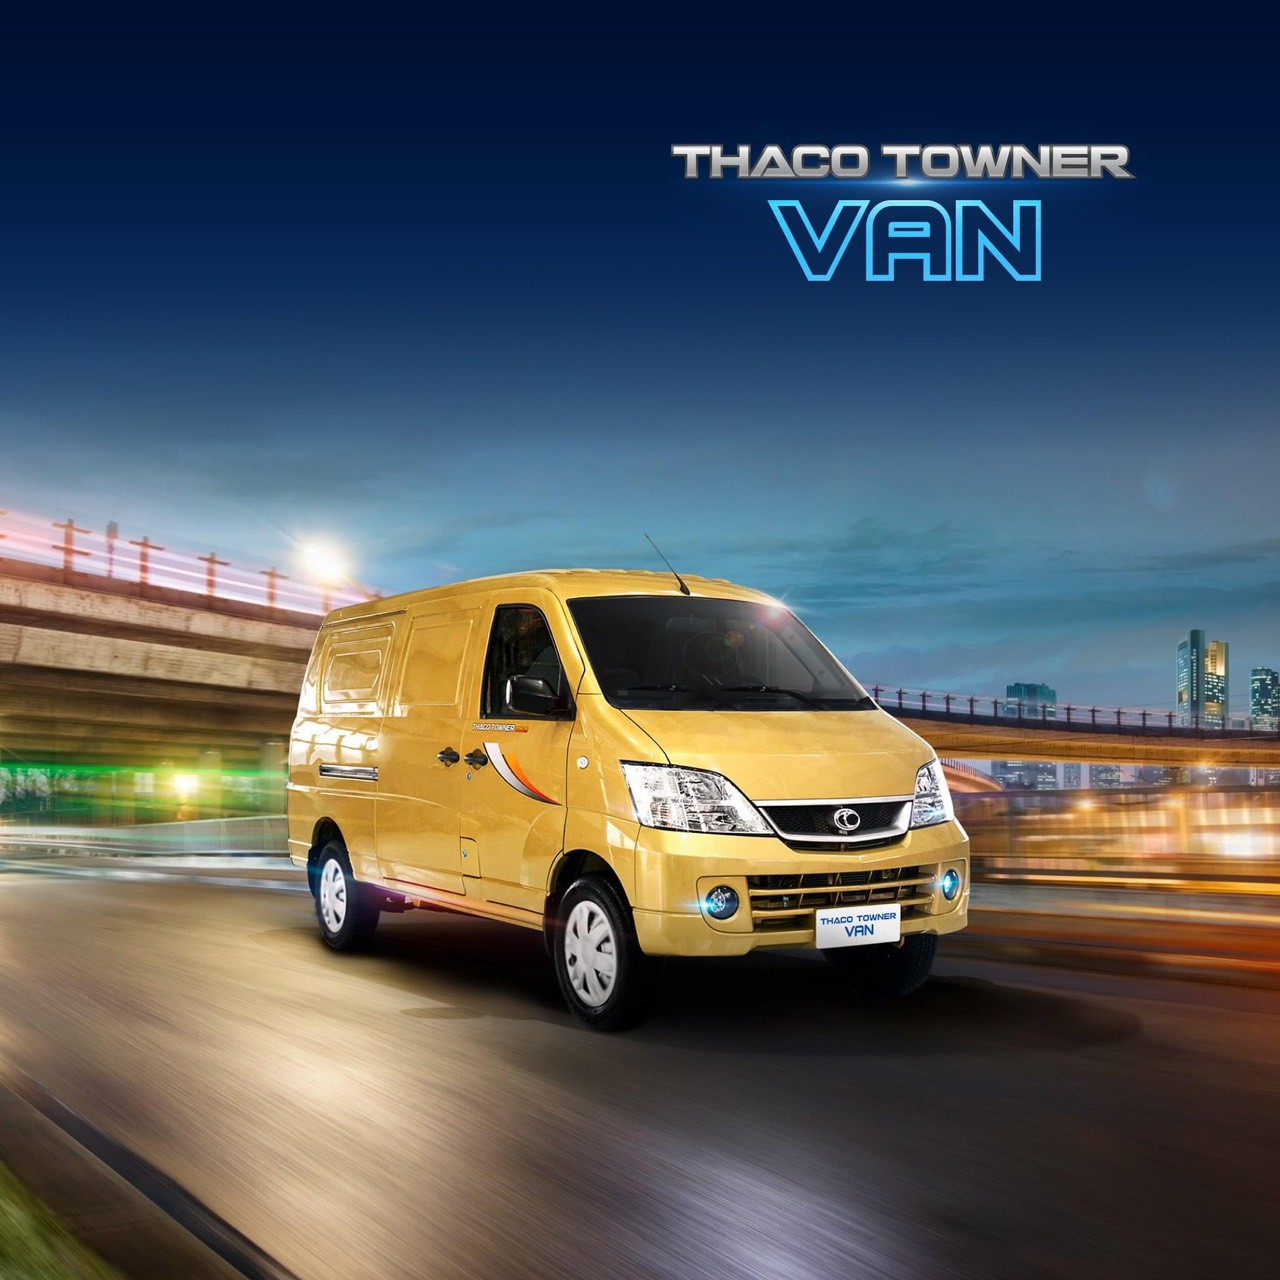 Thaco Towner Van2s chạy full giờ trong thành phố 